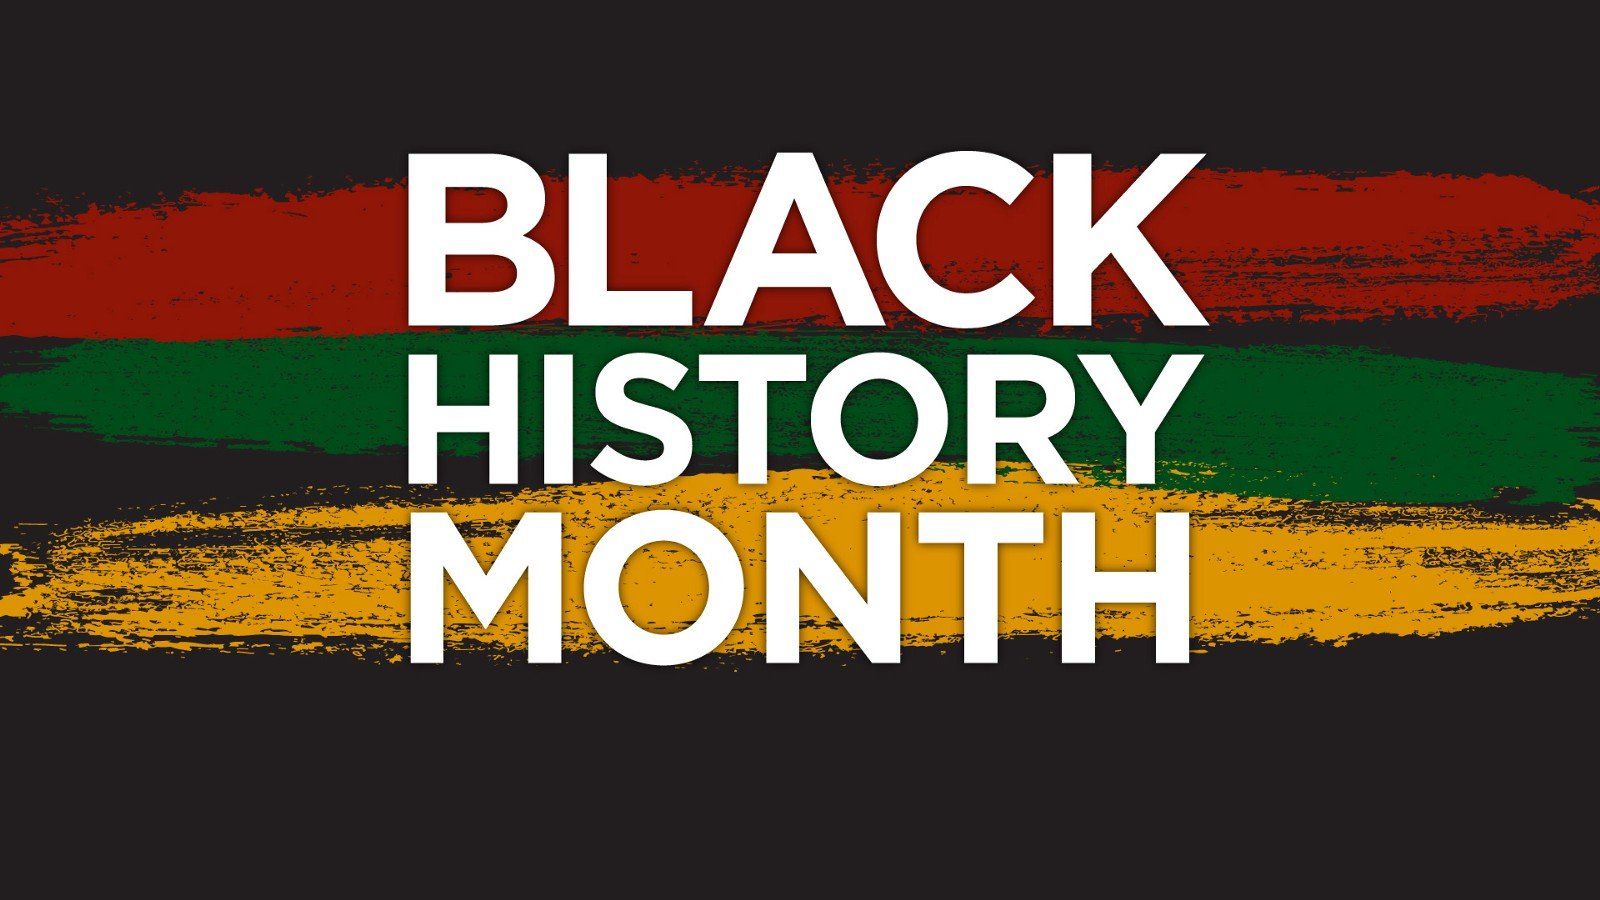 Black History Month 2019 Wallpaper .wallpaperafari.com